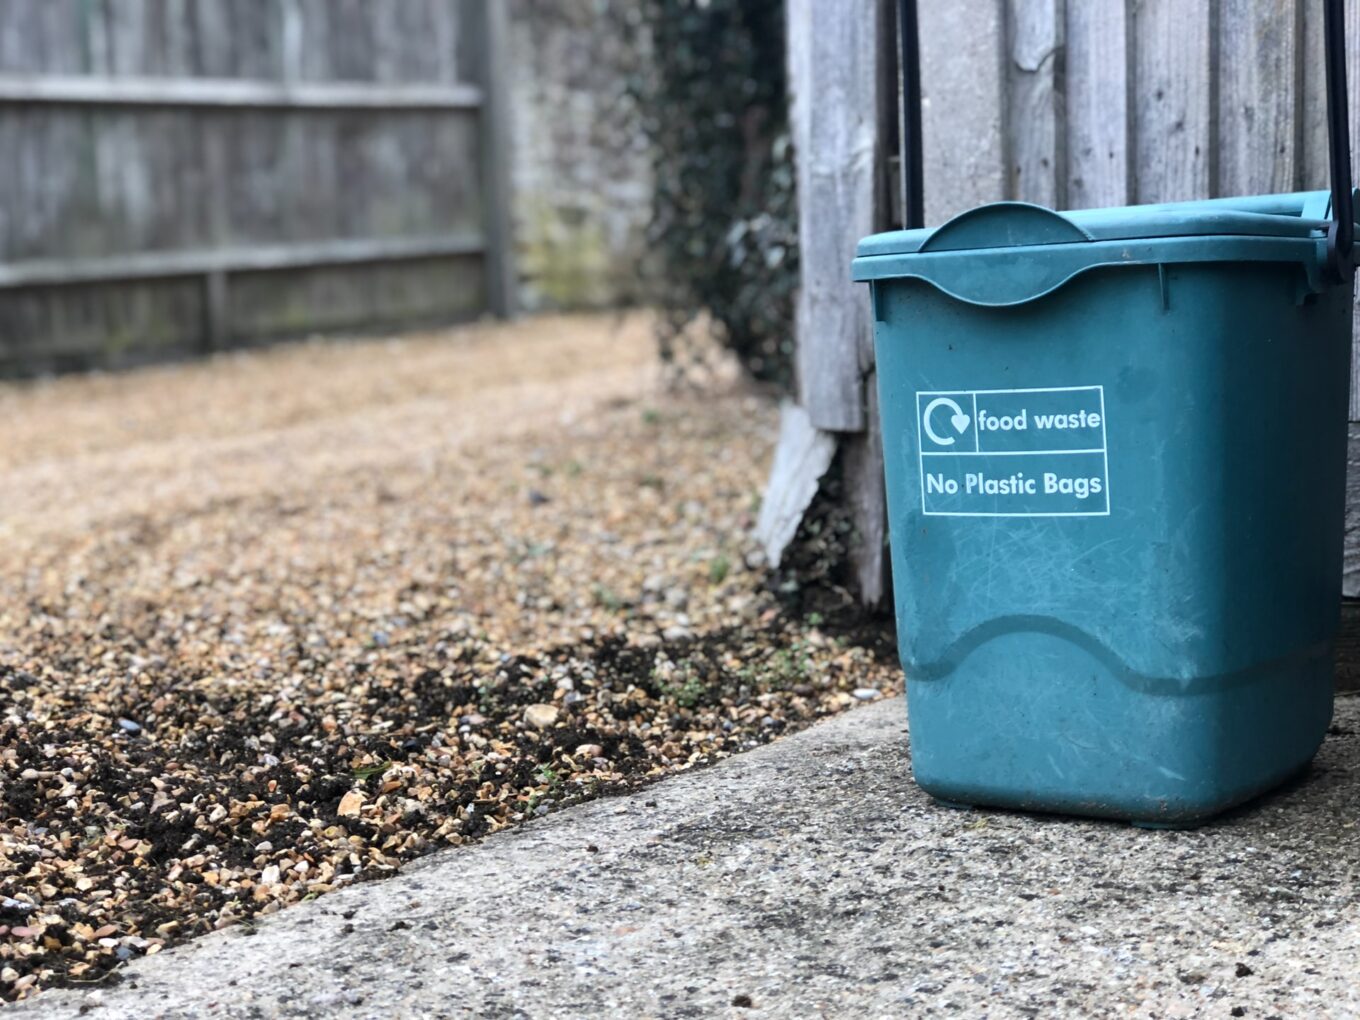 A food waste recycling bin 